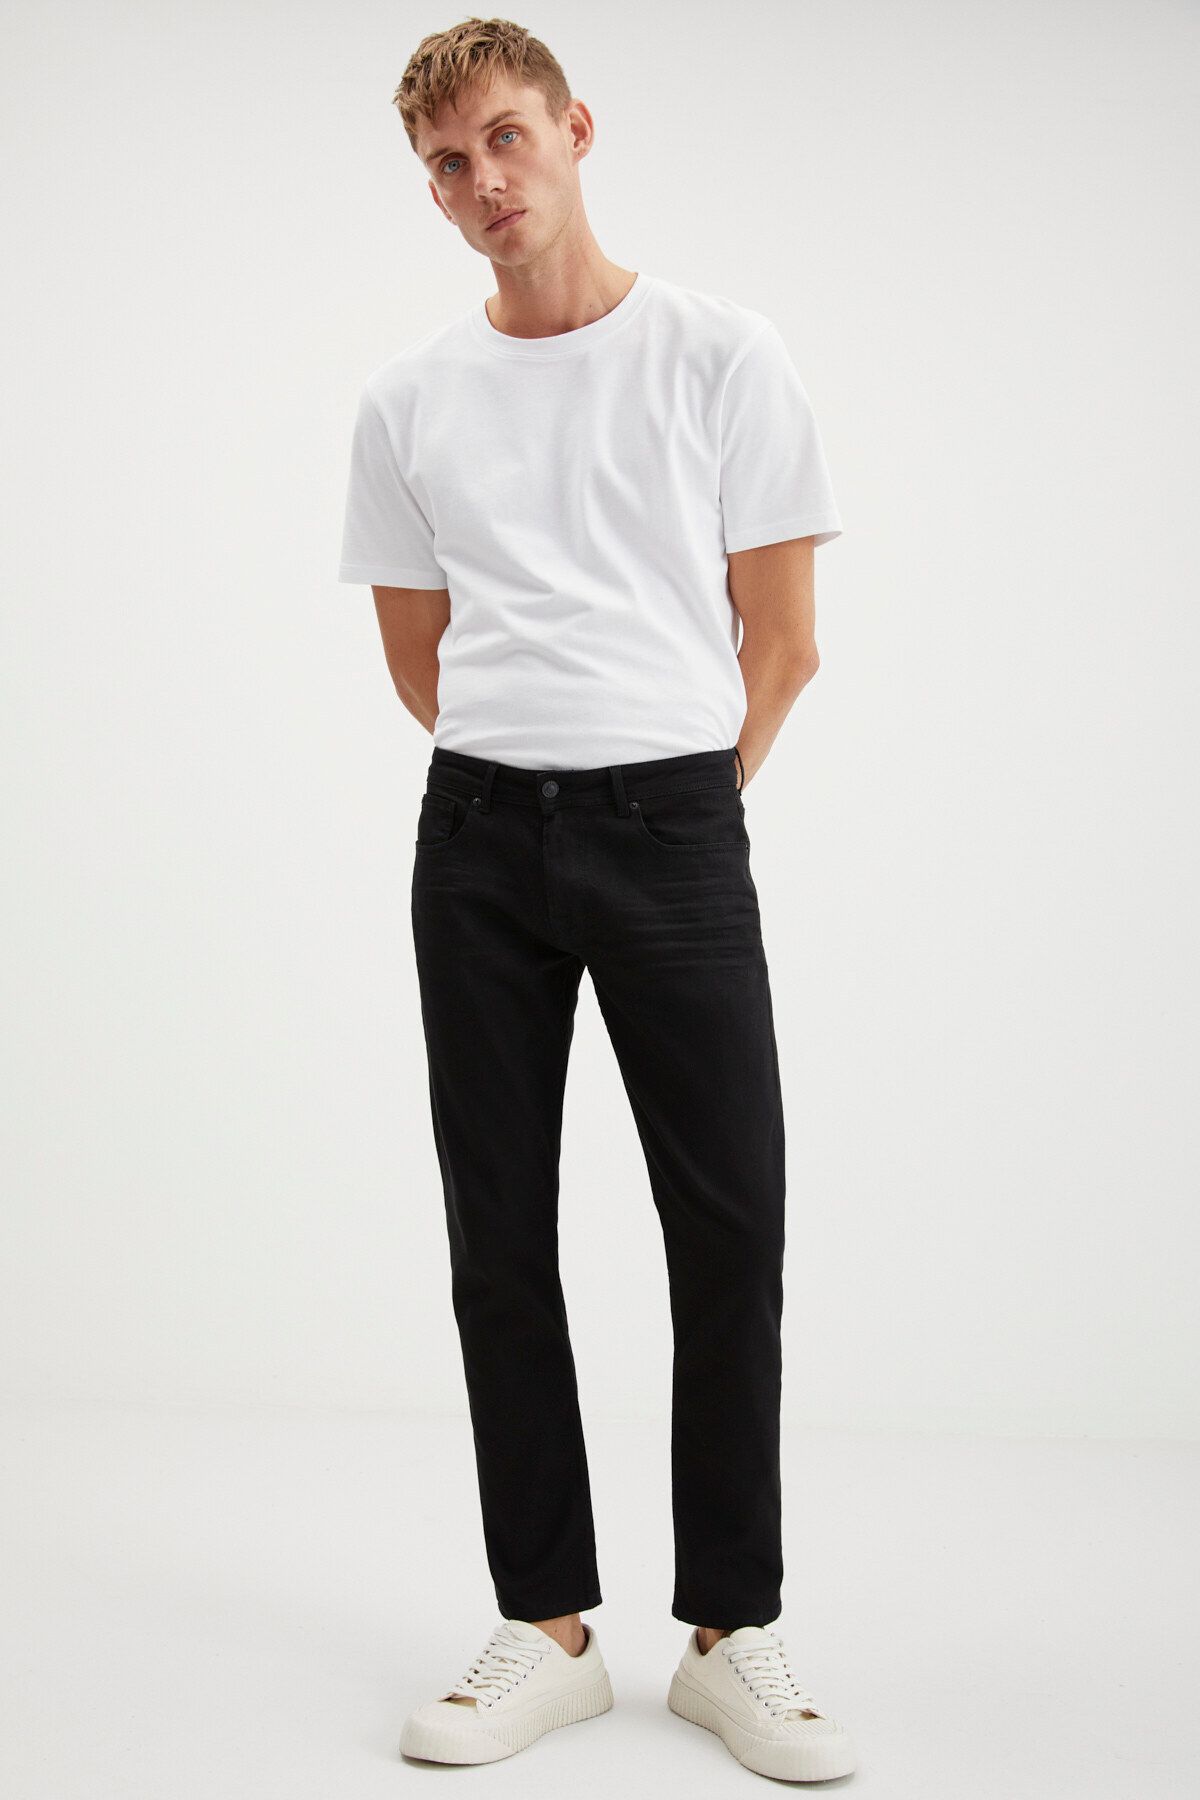 GRIMELANGE Herman Erkek Denim Kalın Dokulu Slim Fit Kalıplı Siyah Jeans